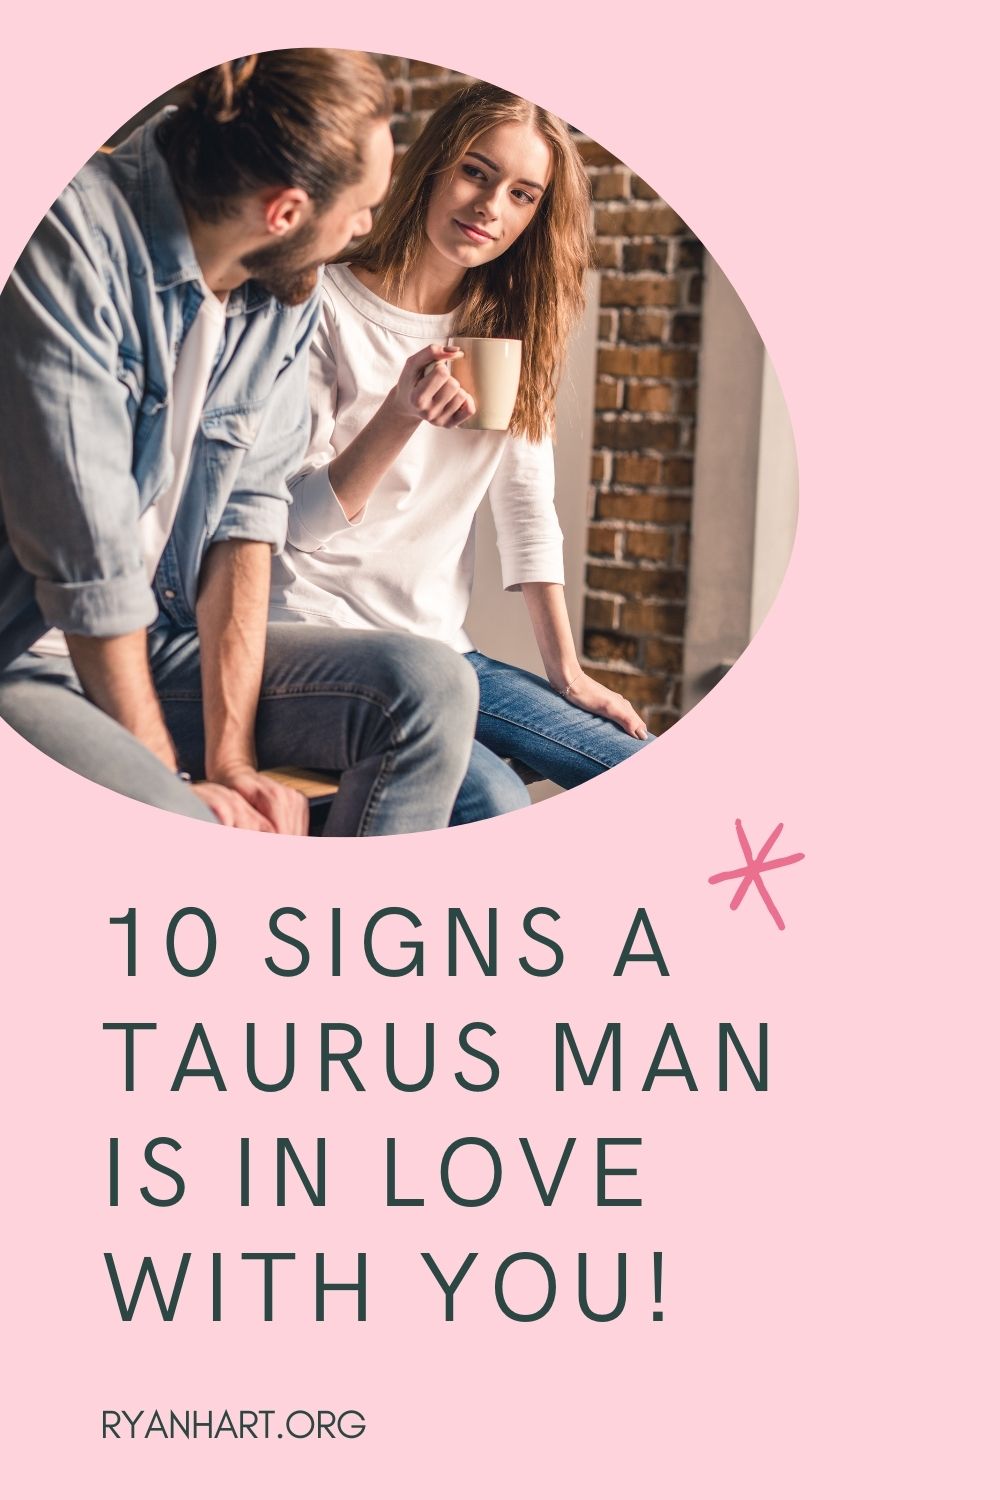  10 चिन्हे एक वृषभ माणूस तुमच्यावर प्रेम करतो